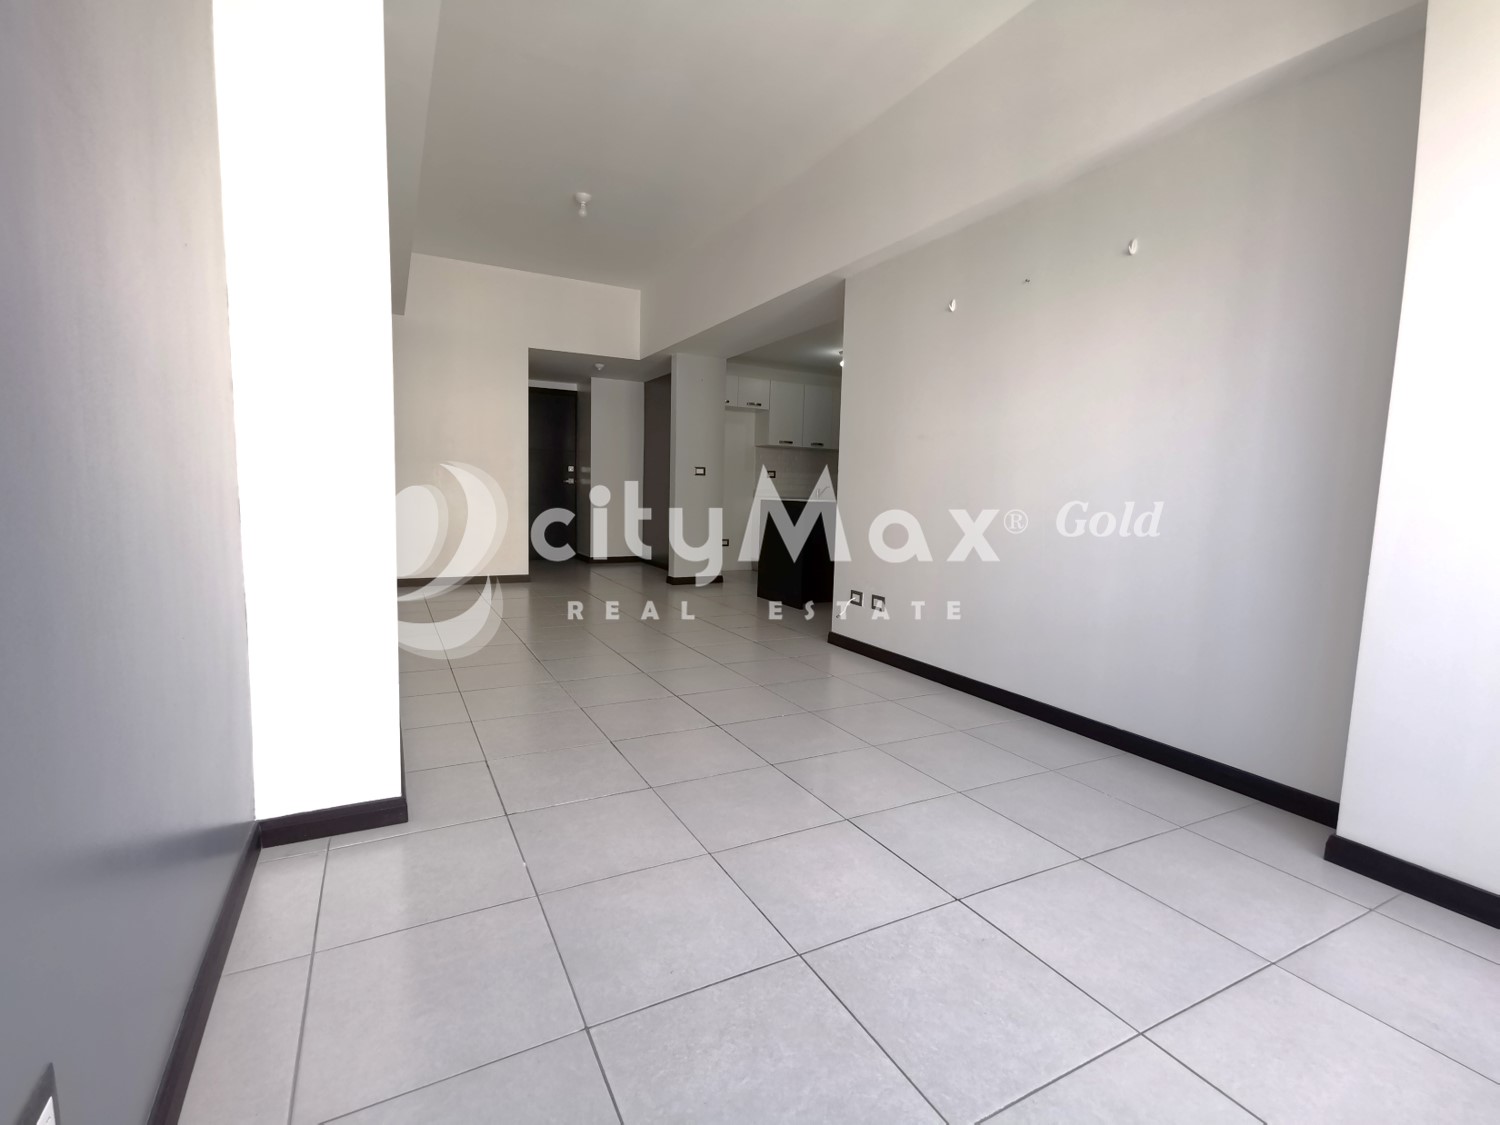 CityMax-Gold vende apartamento en Mixco